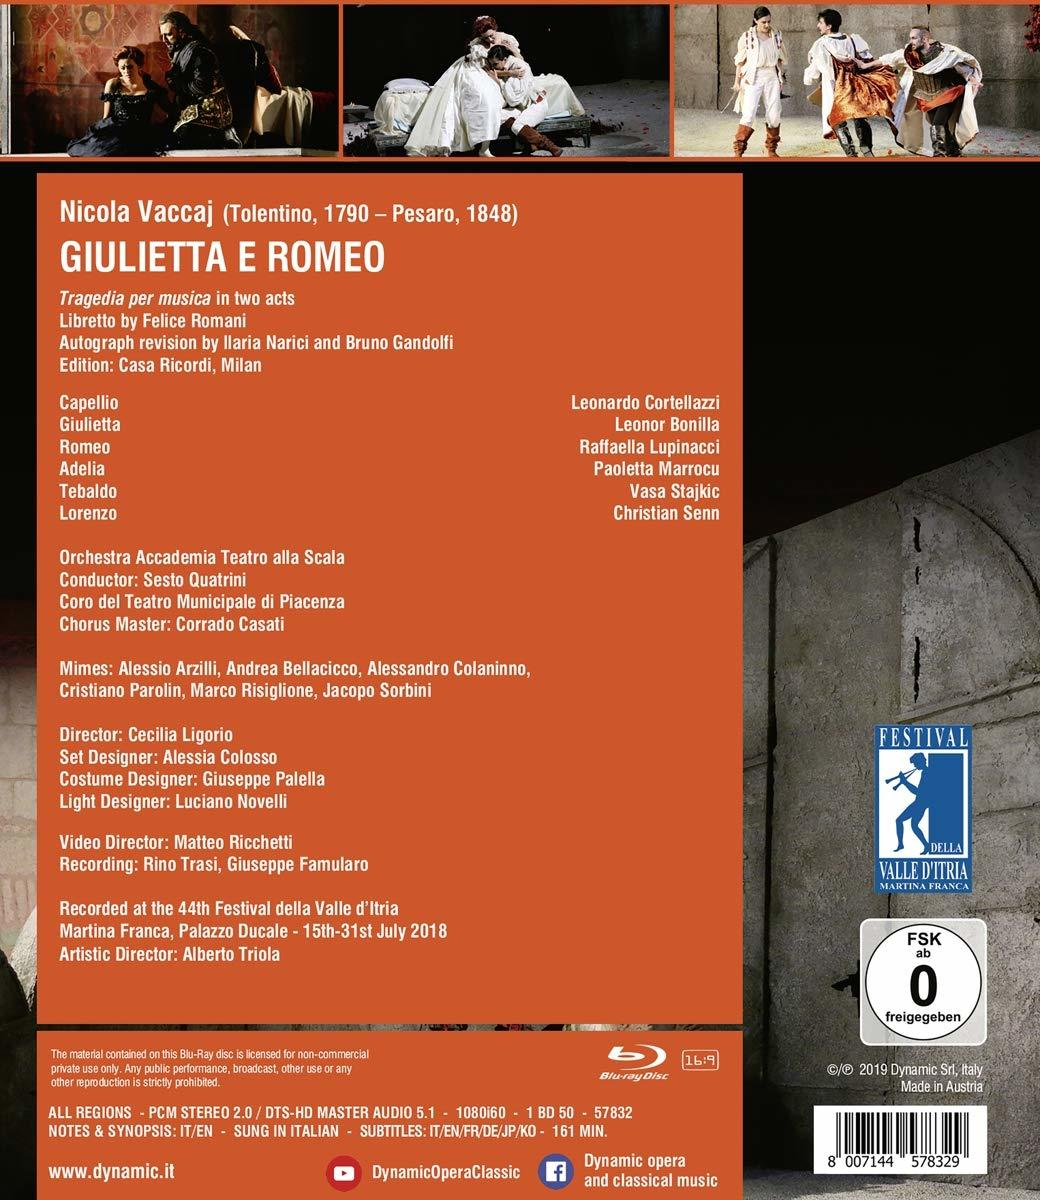 Raffaella Giulietta Bonilla Teatro - e (Blu-ray) Scala, Leonor - Orchestra Accademia, Alla Lupinacci, Romeo